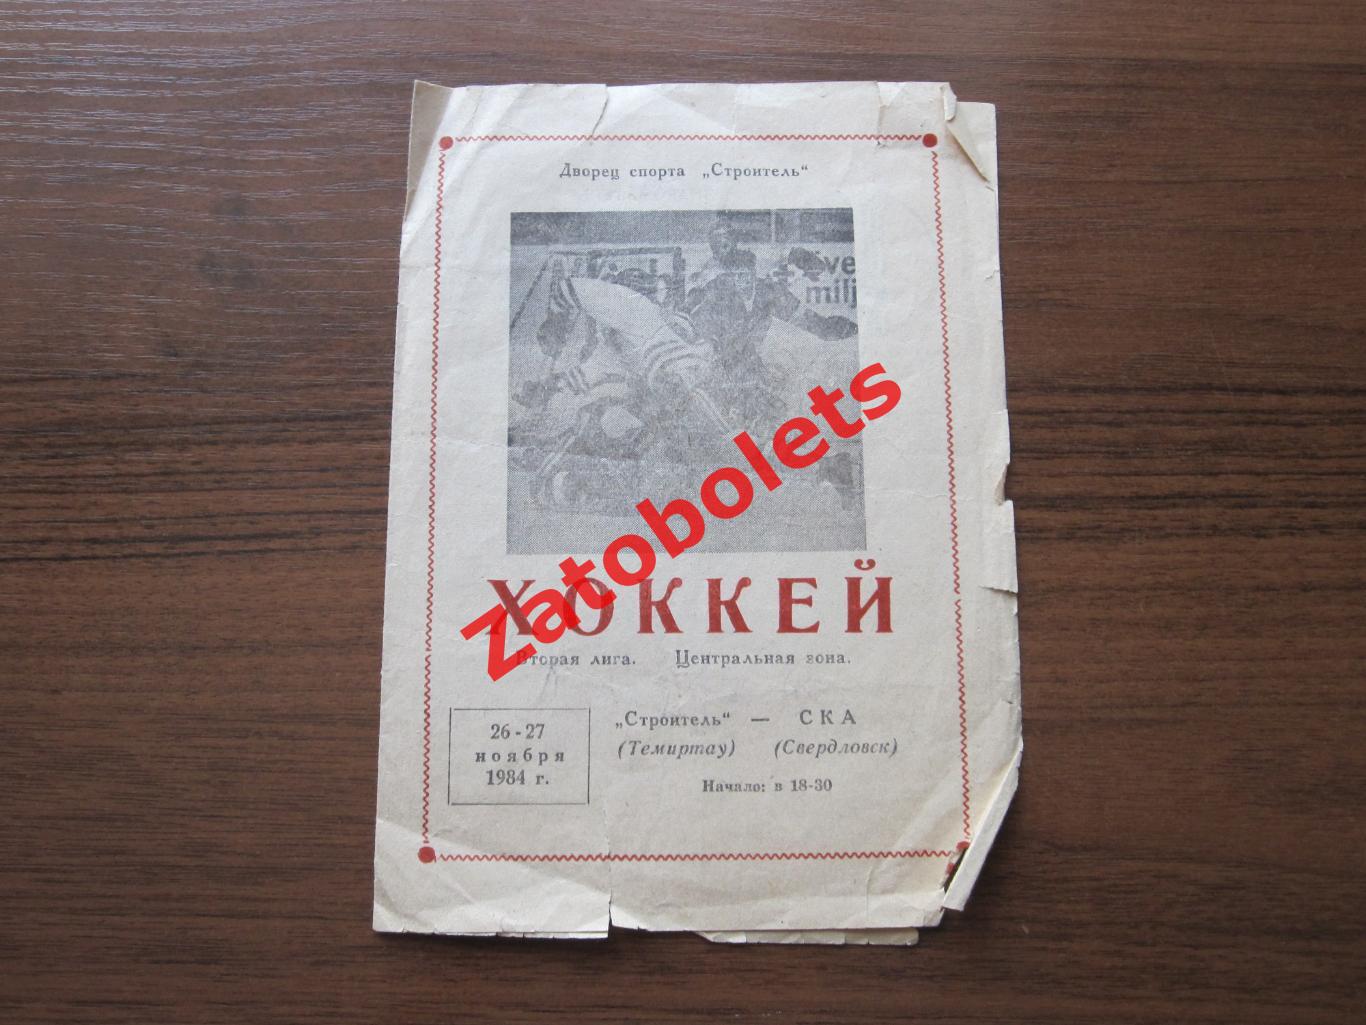 Строитель Темиртау - СКА Свердловск 26-27.11.1984